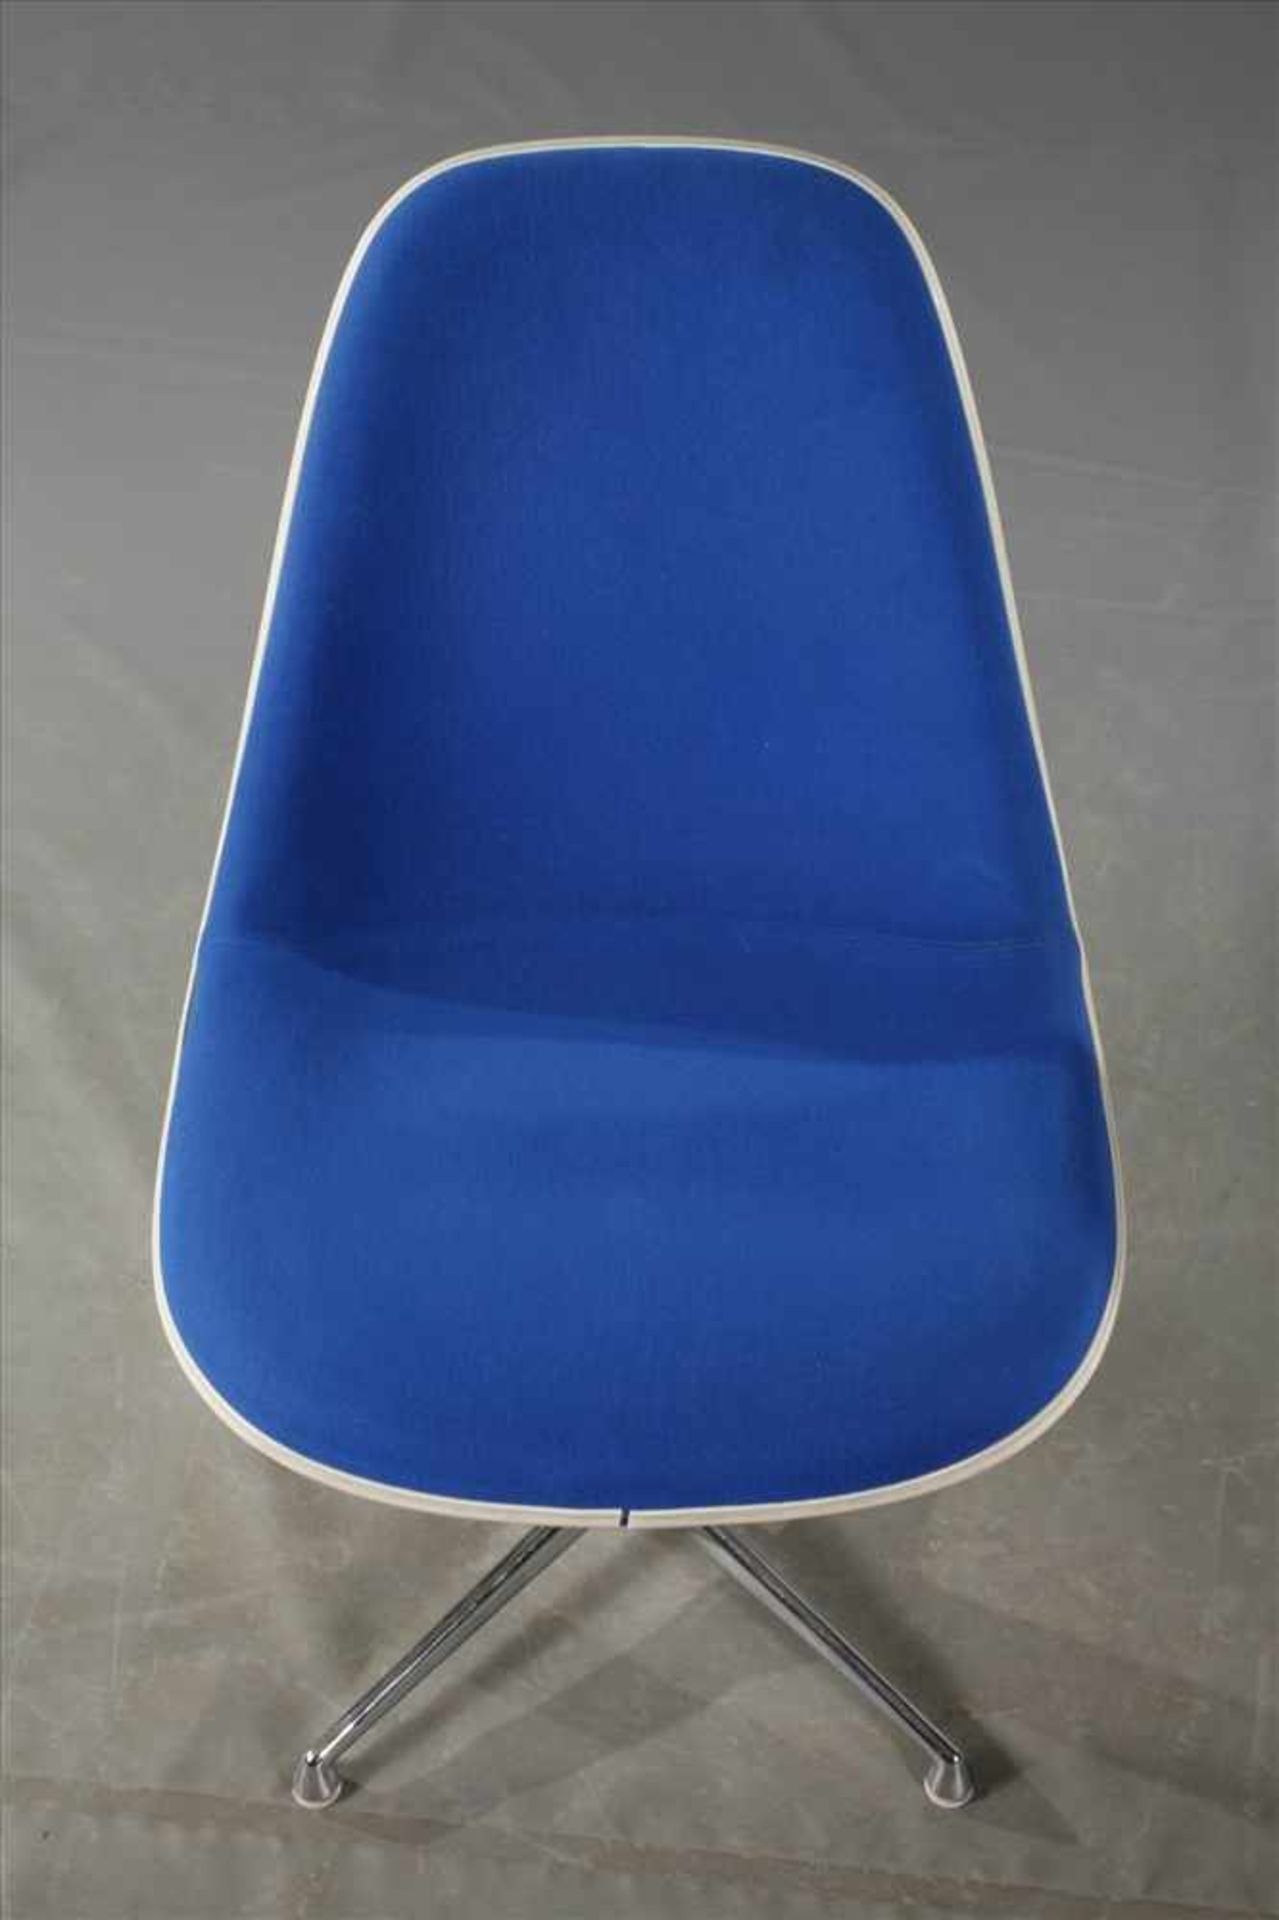 Vier Stühle "Lafonda" Charles & Ray Eames Entwurf 1961, Herstellung Vitra Weil am Rhein, Sitzschalen - Bild 3 aus 7